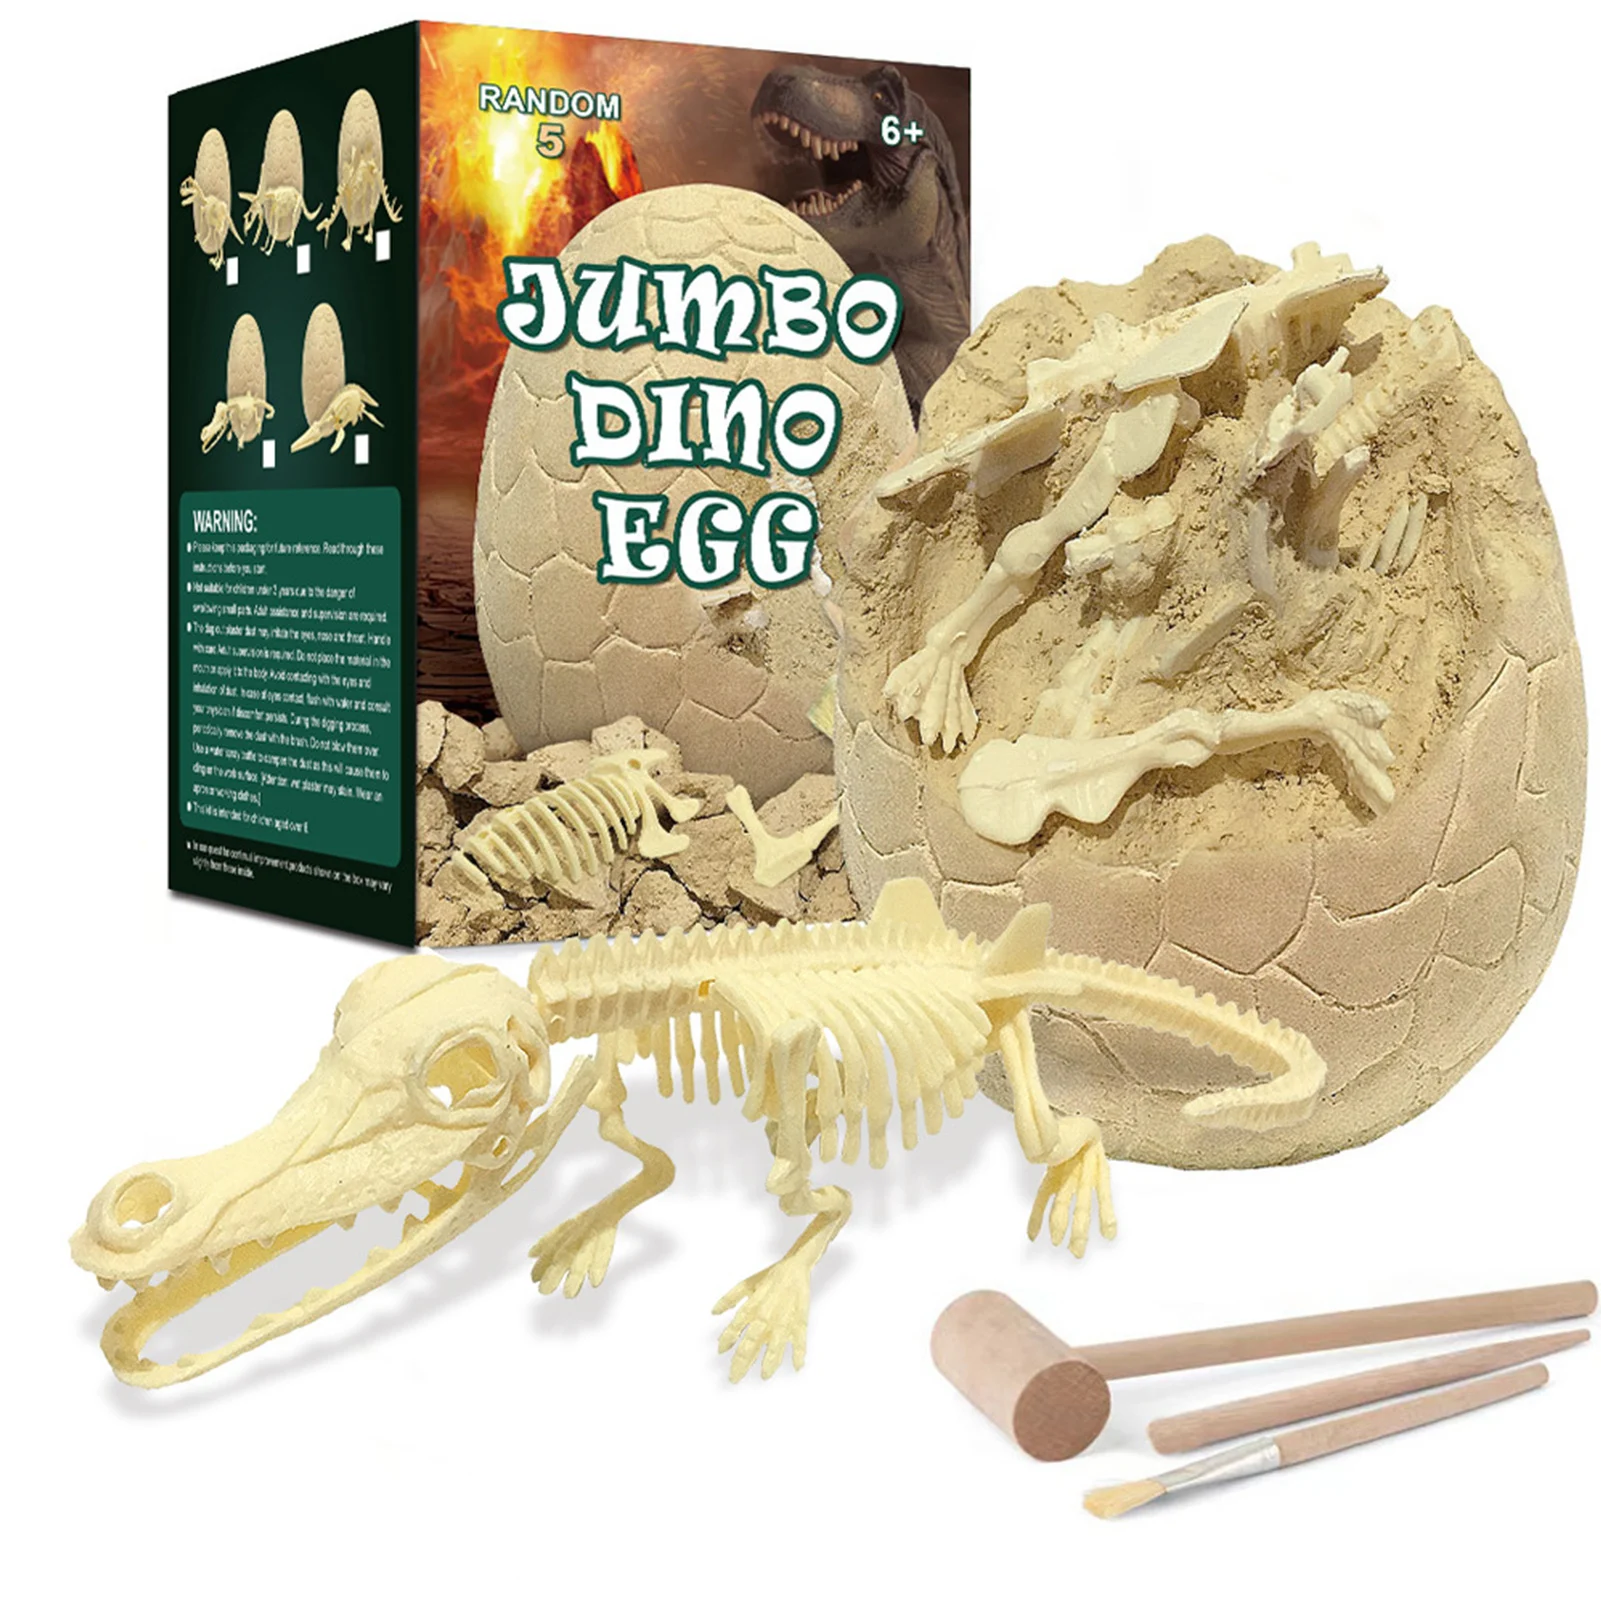 

Динозавр яйца копать набор динозавр набор раскопки для детей пасхальные яйца Археология и палентология игрушка стебель игрушки для 4-12 лет ...